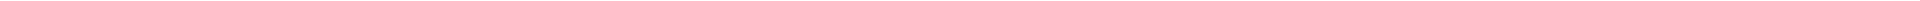 Элайнеры - цены на капы для выравнивания (исправления) прикуса, цены в Астане (Нур-Султан), Алматы, Атырау, Усть-Каменогорск, Уральск, Кокшетау в Казахстане, фото 17